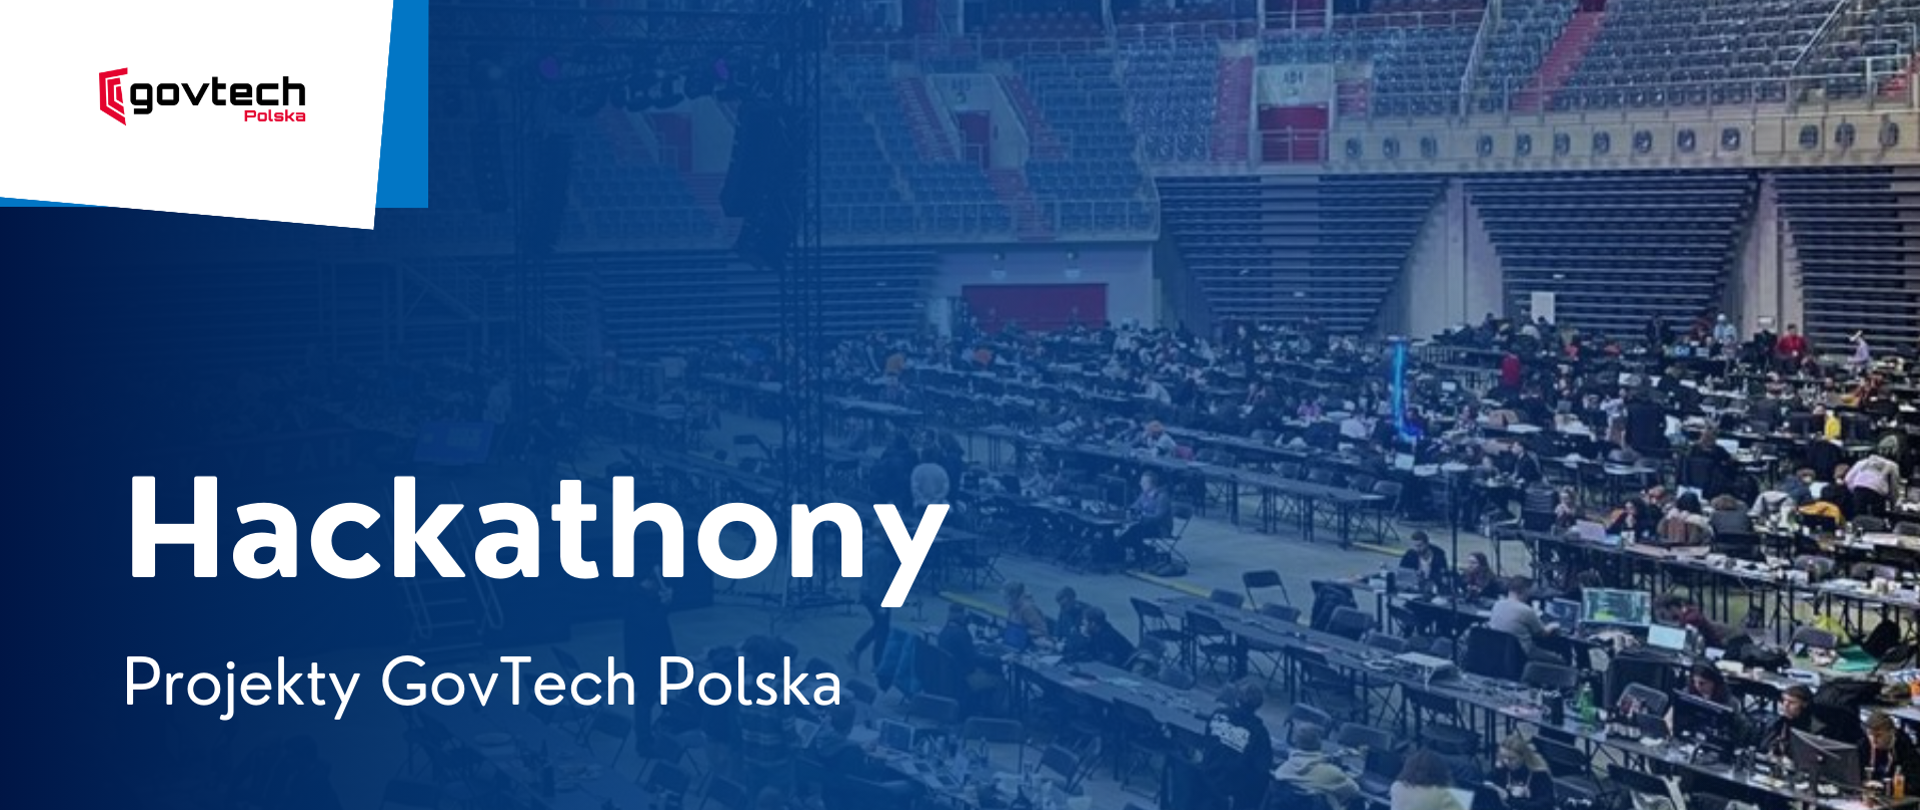 Hackathony projekty GovTech Polska - Szkoła przyszłości już dziś!